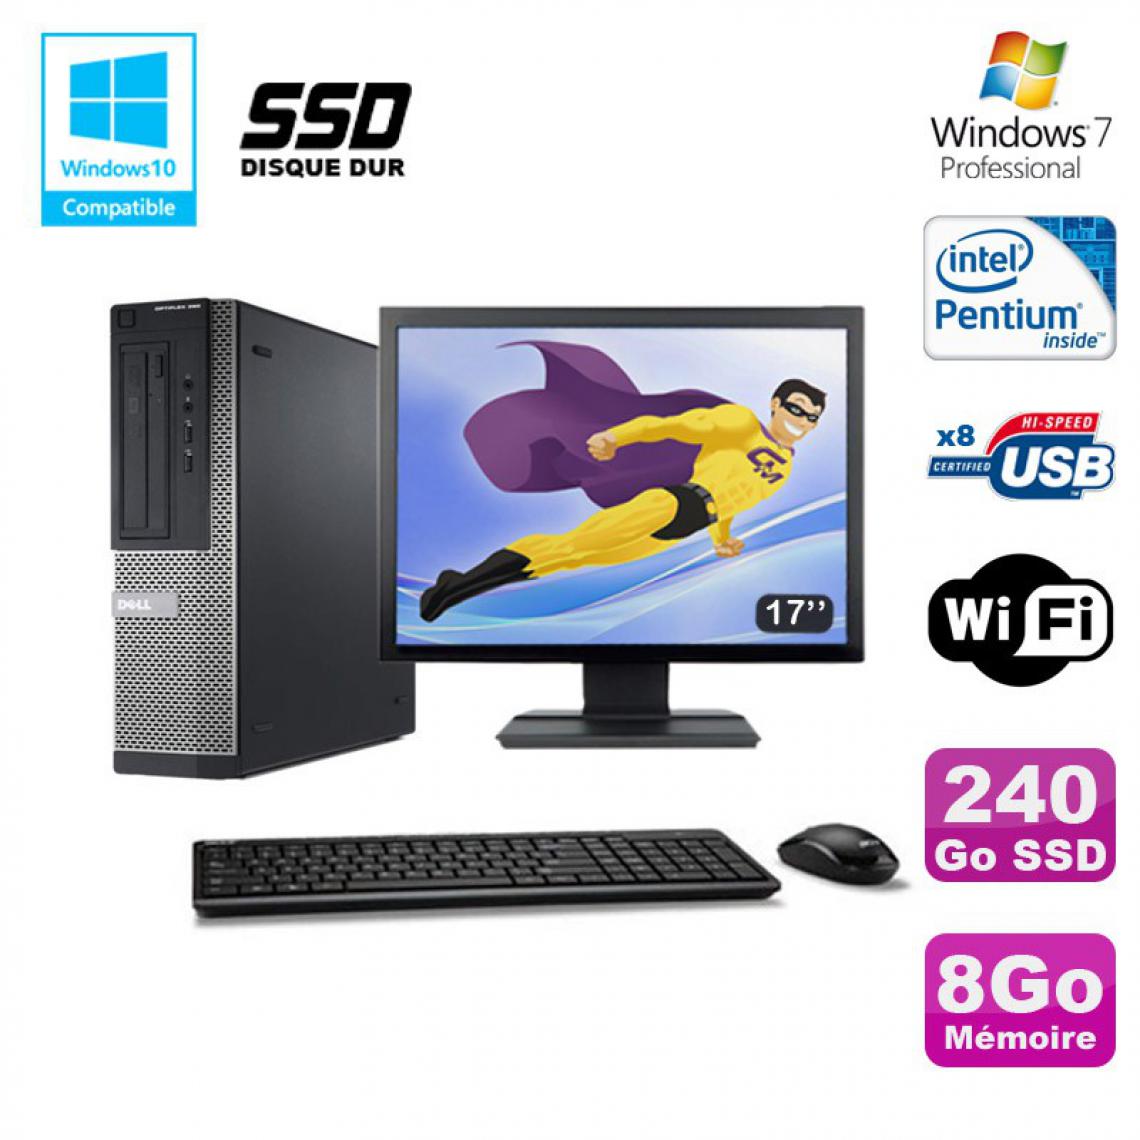 Dell - Lot PC DELL Optiplex 390 DT G630 2.7Ghz 8Go 240Go SSD Graveur WIFI W7 Pro + 17" - PC Fixe